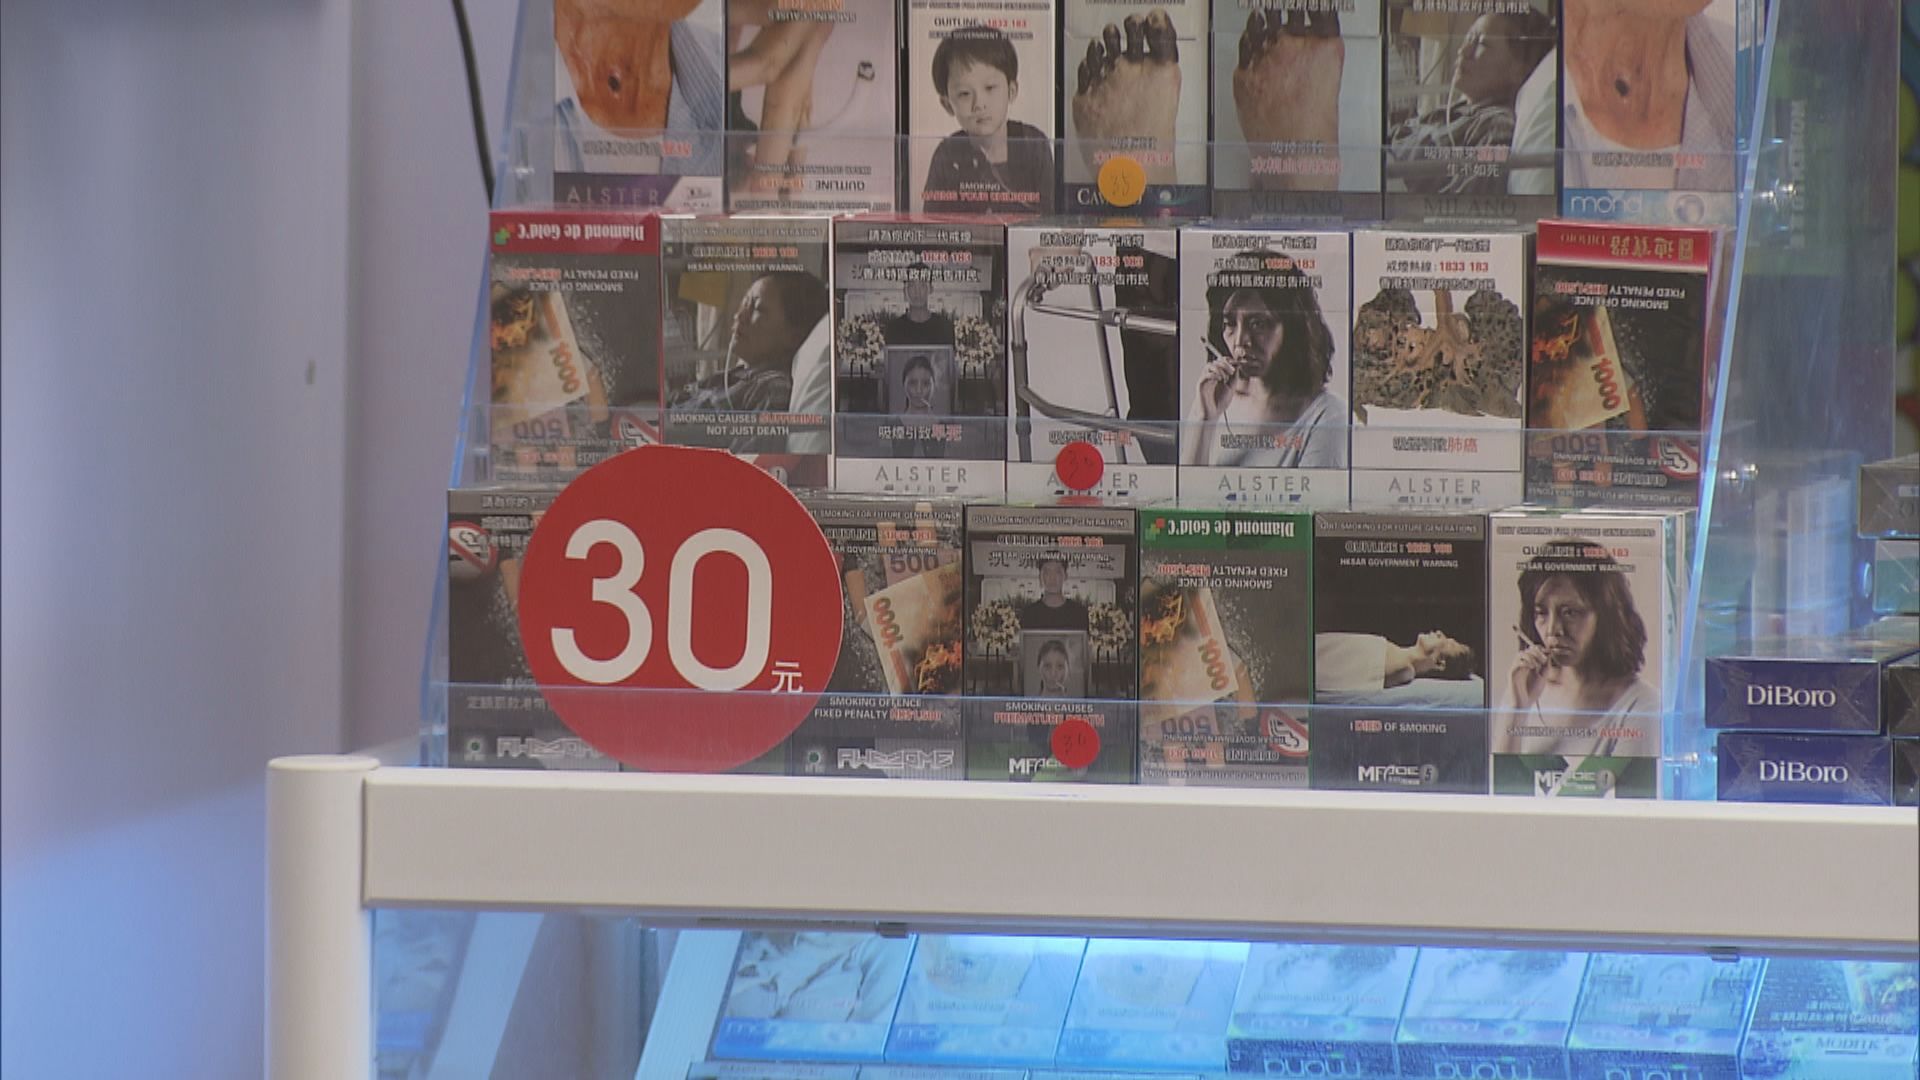 荃灣、北角「老鼠煙」湧現最平30元 海關總部附近亦有售 